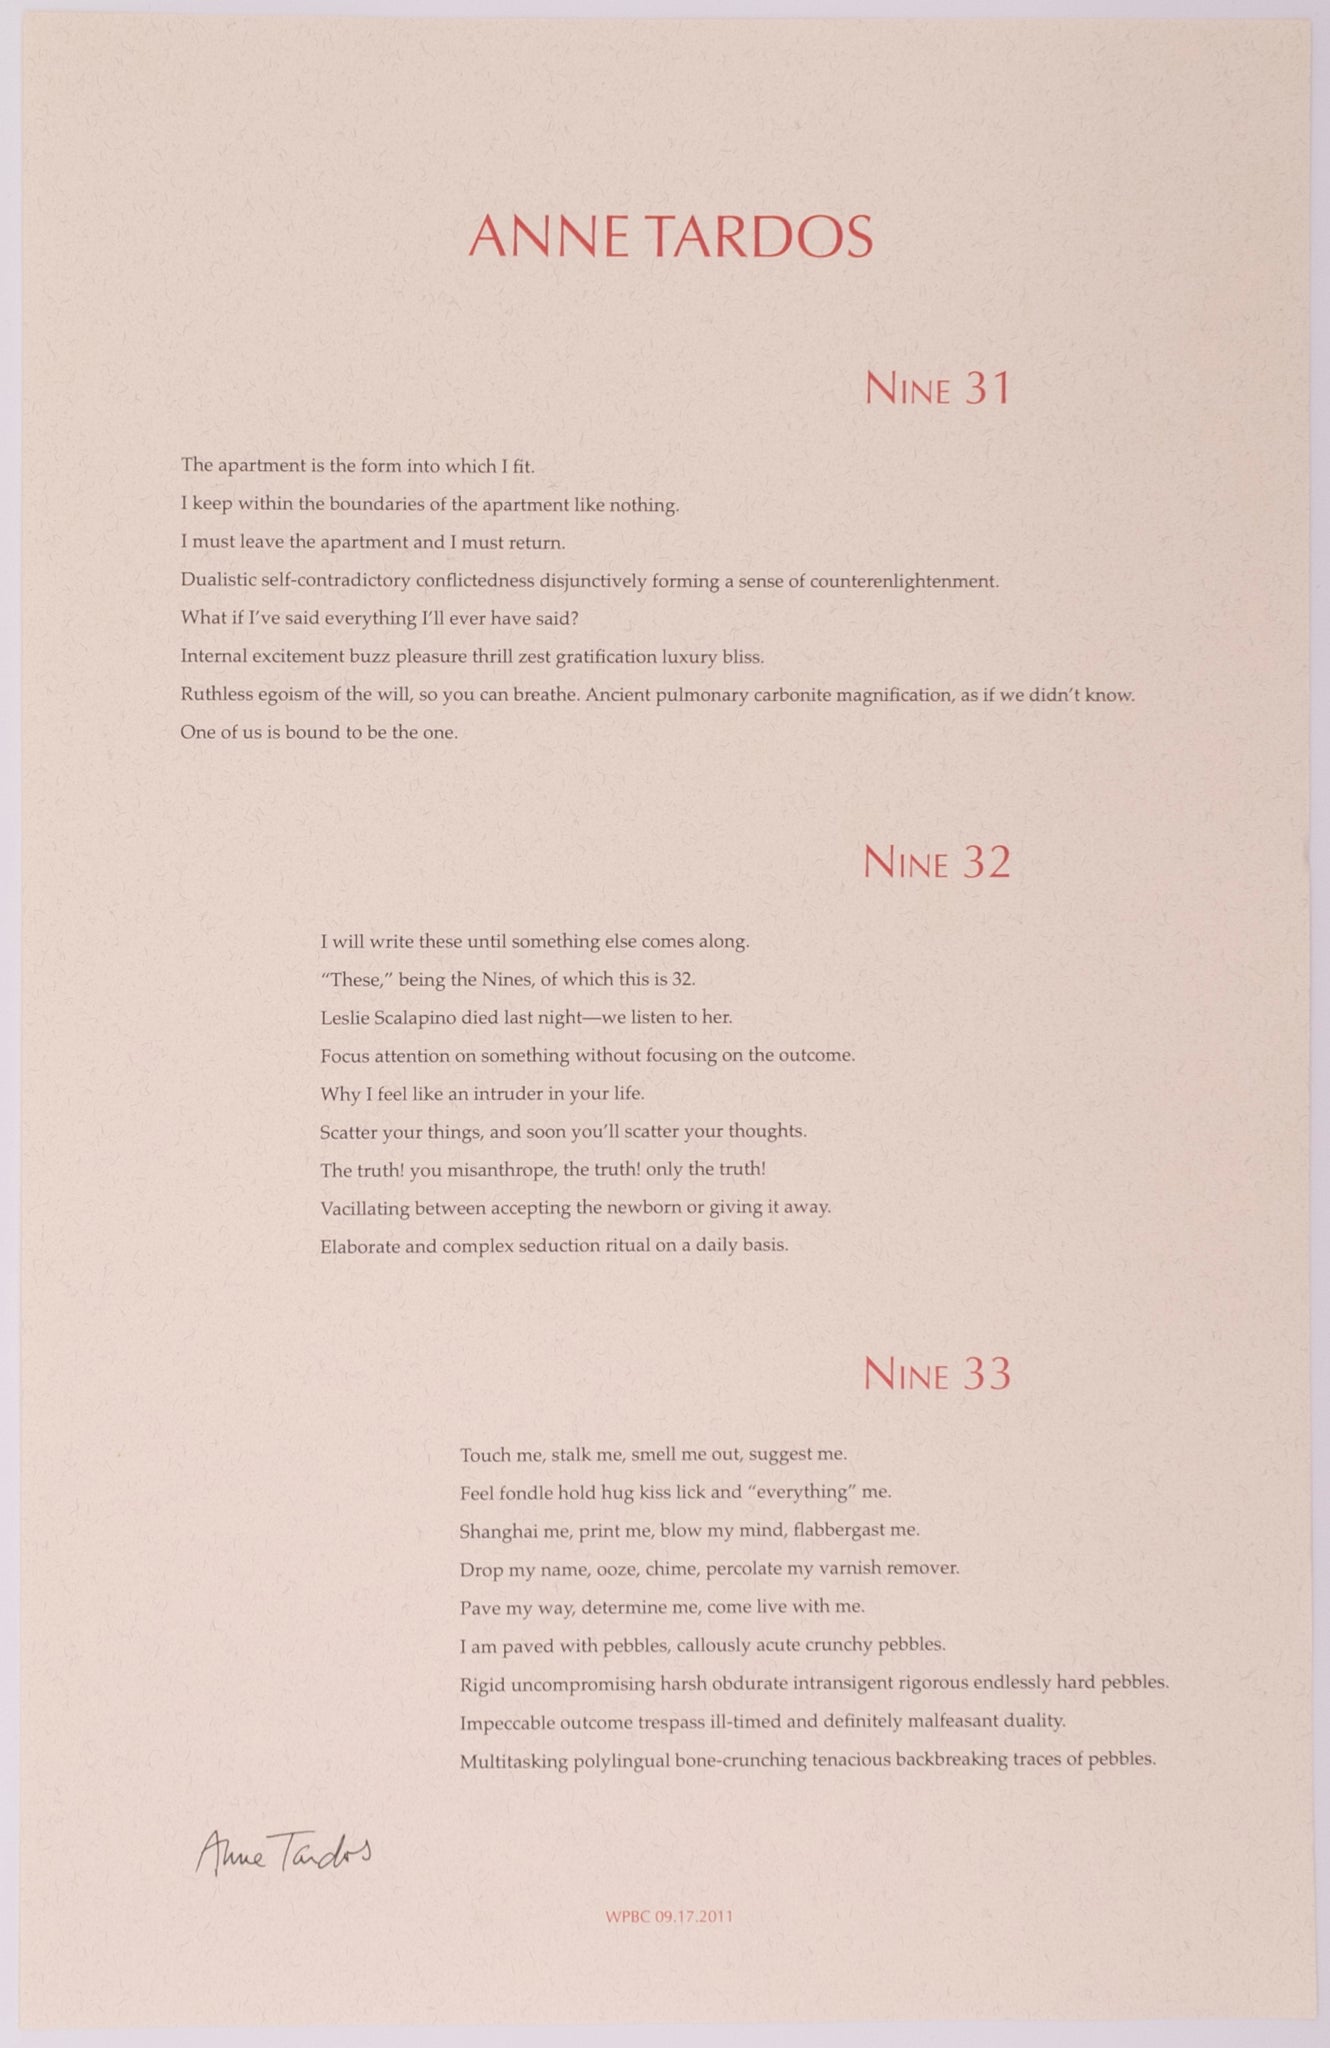 Broadside titled Nine 31; Nine 32; Nine 33 by Anne Tardos. Red and black text on tan paper.